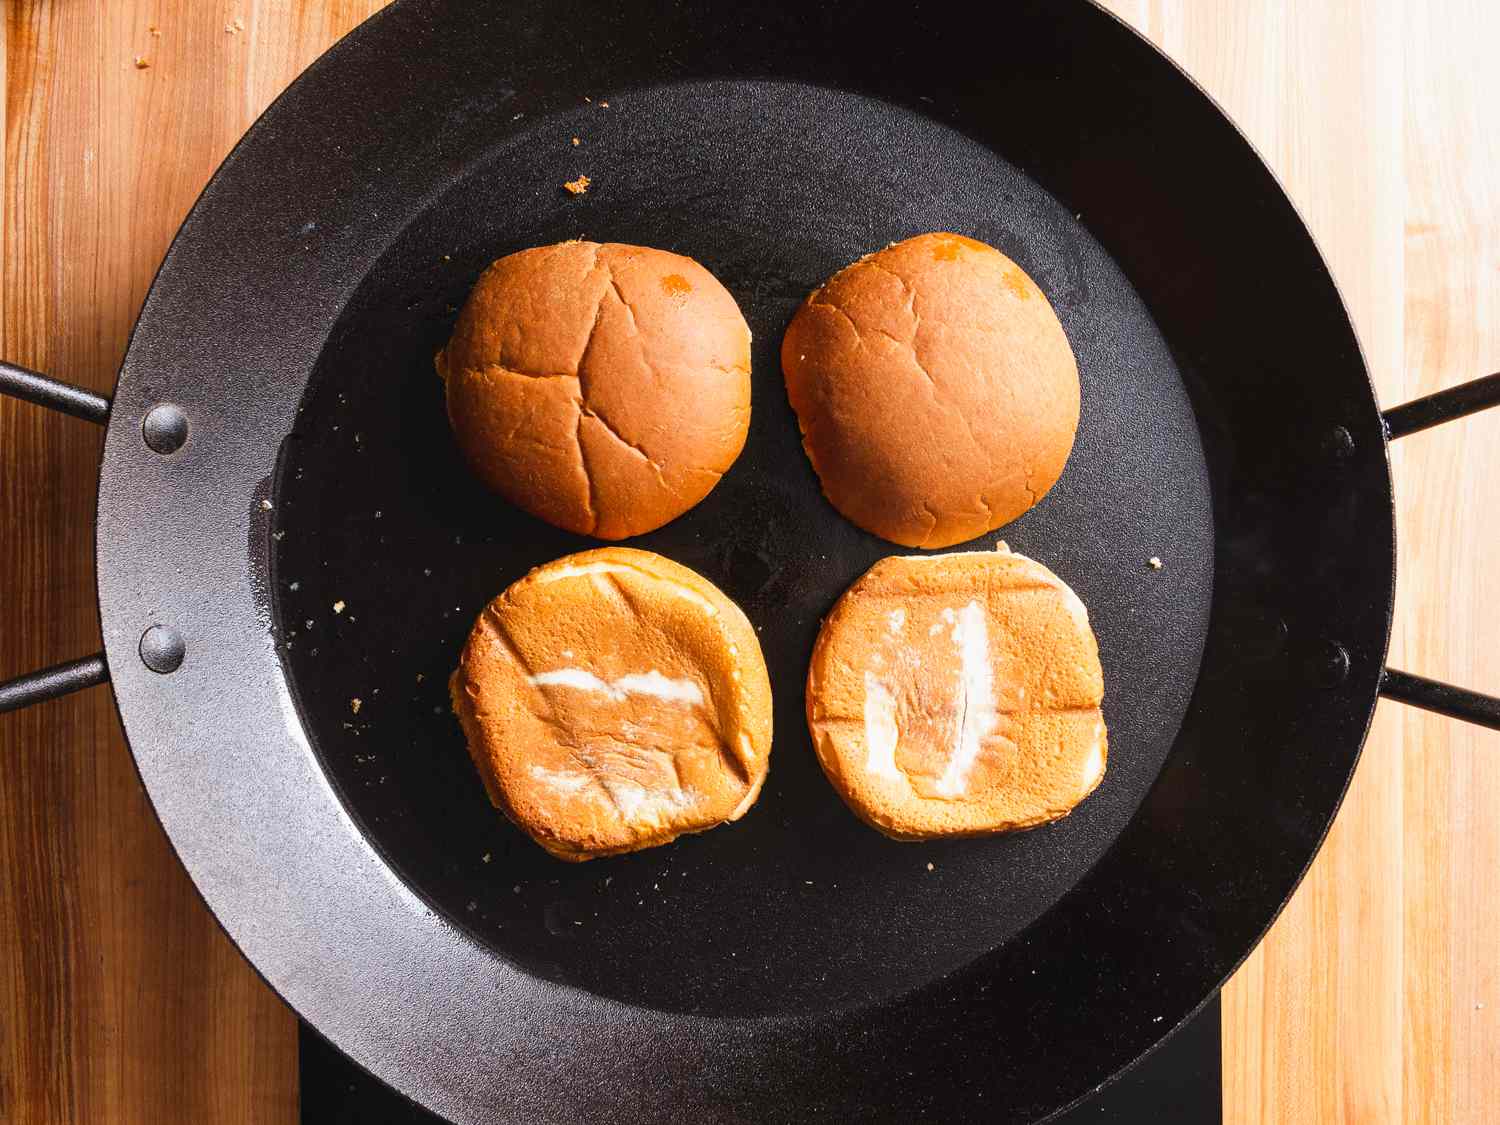 hamburger buns toasting in a skillet